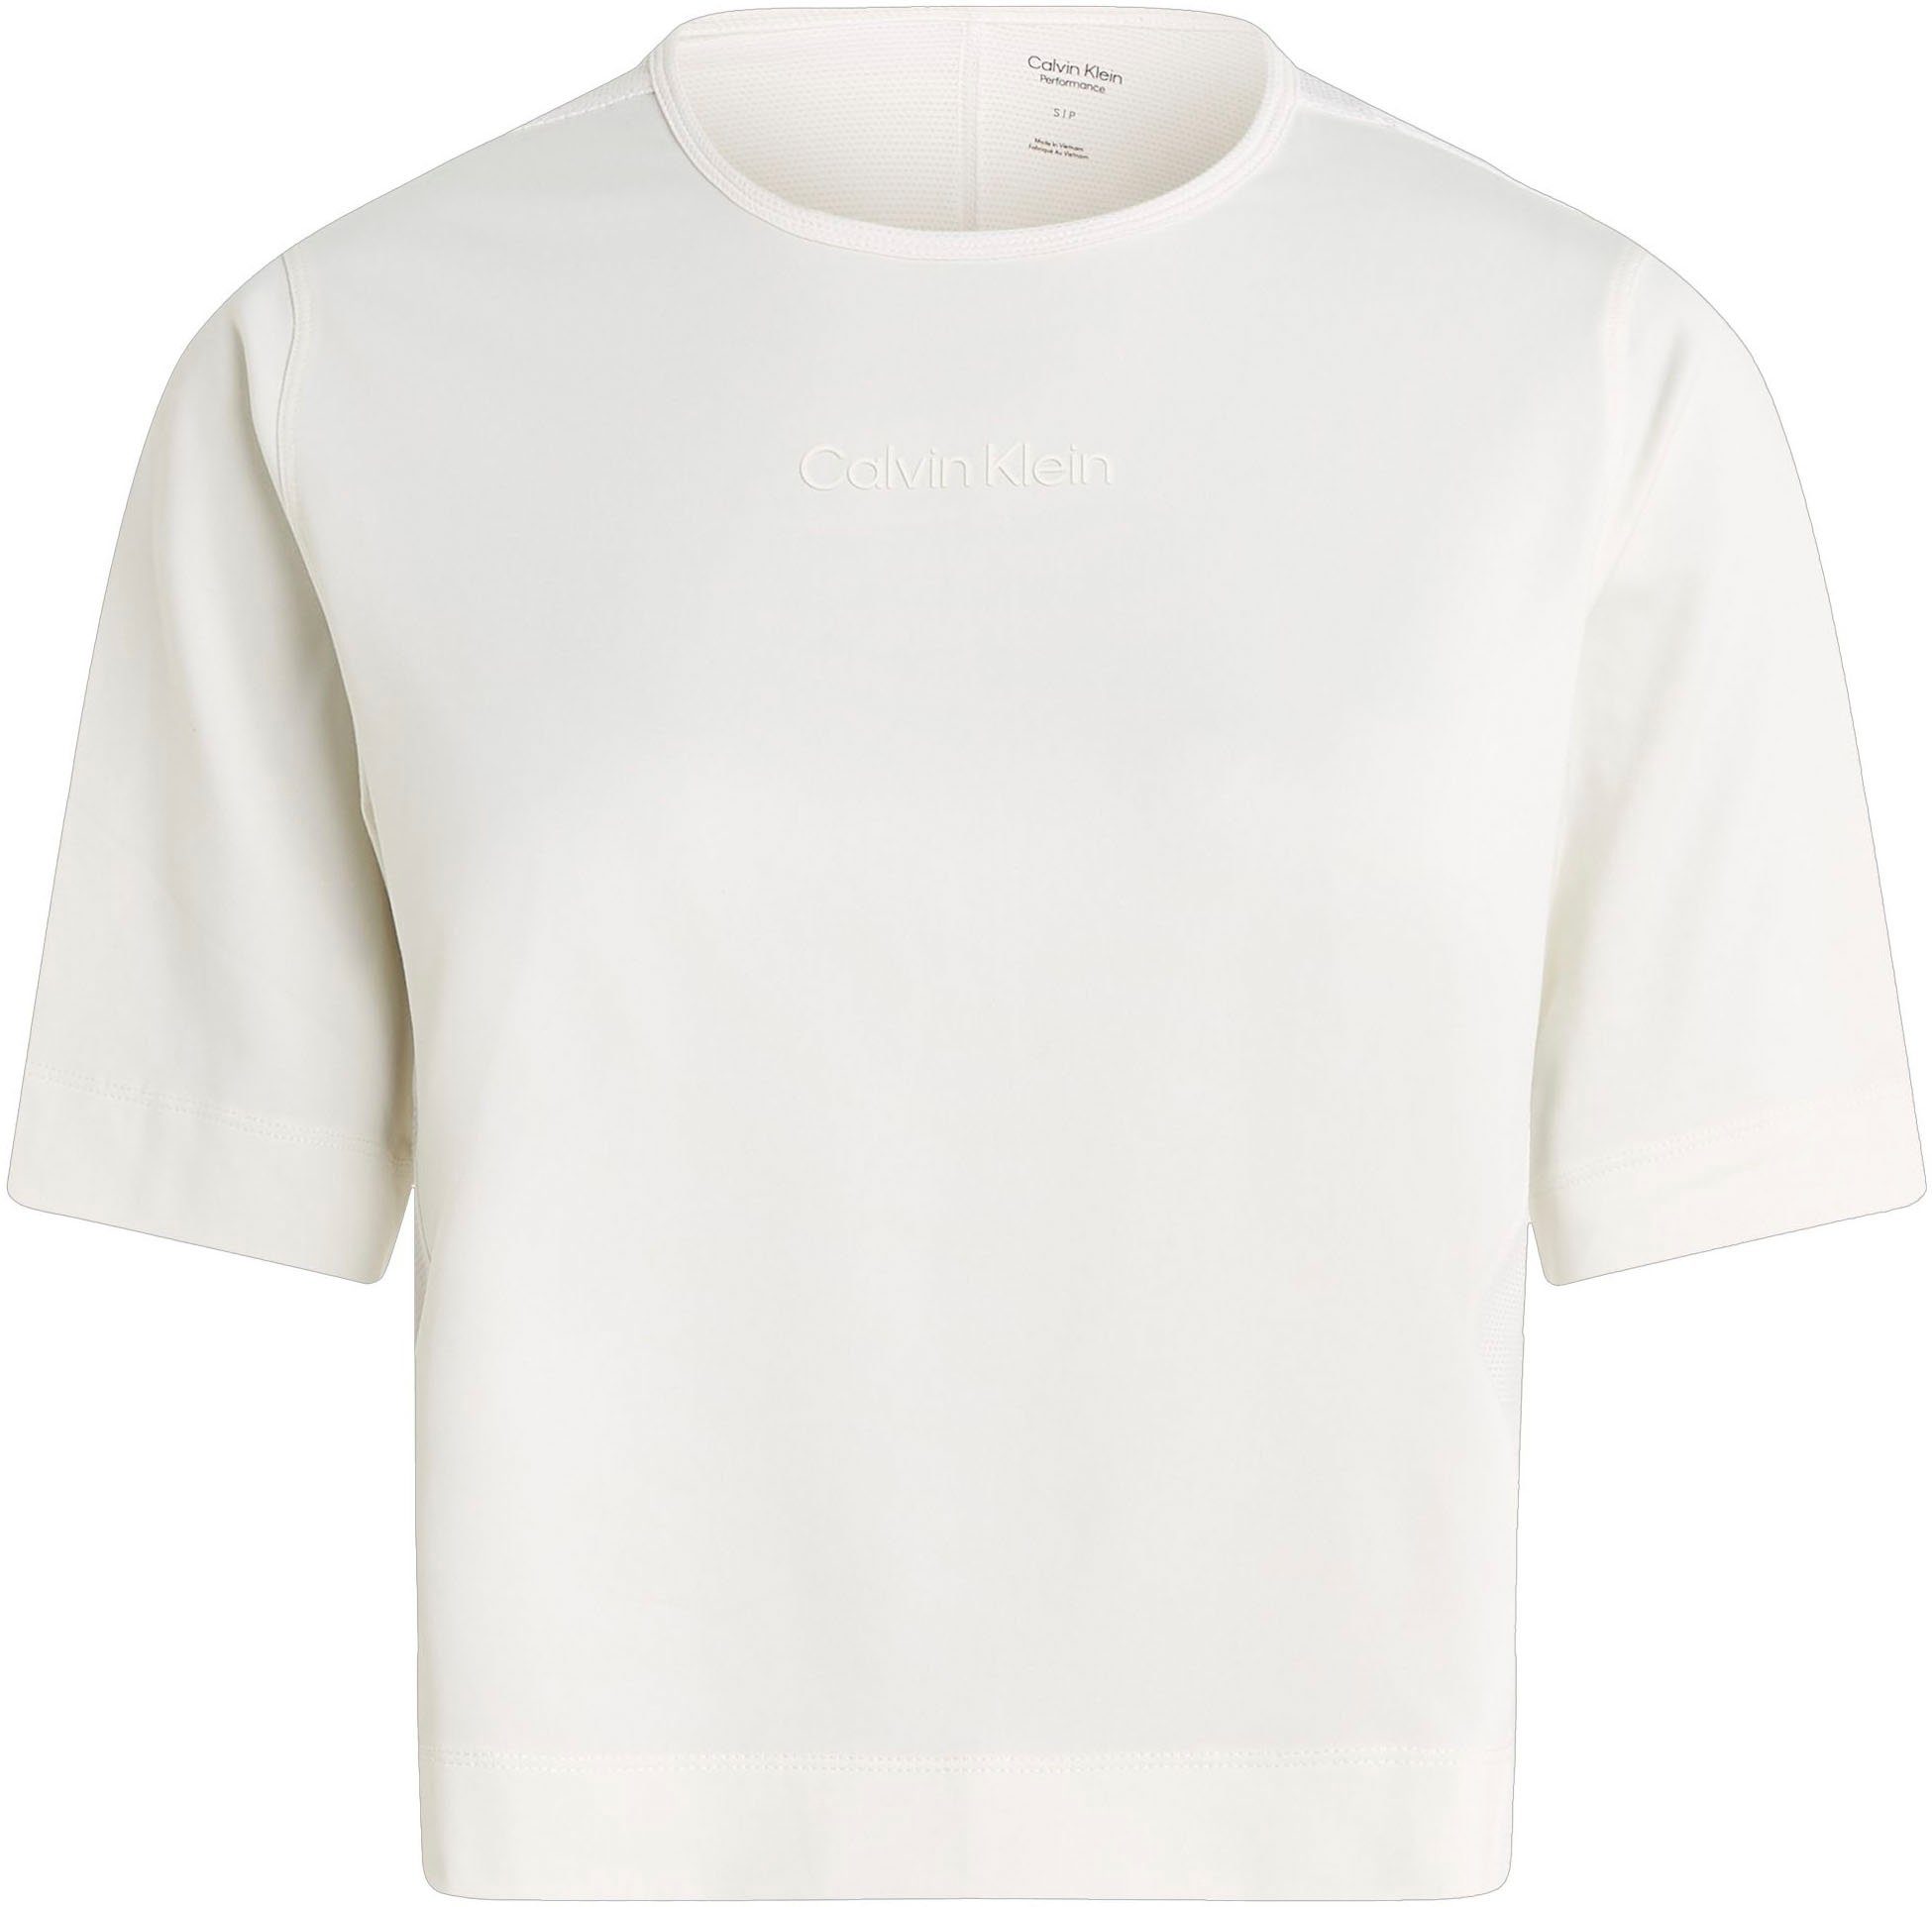 Calvin Klein Sport T-Shirt White Suede